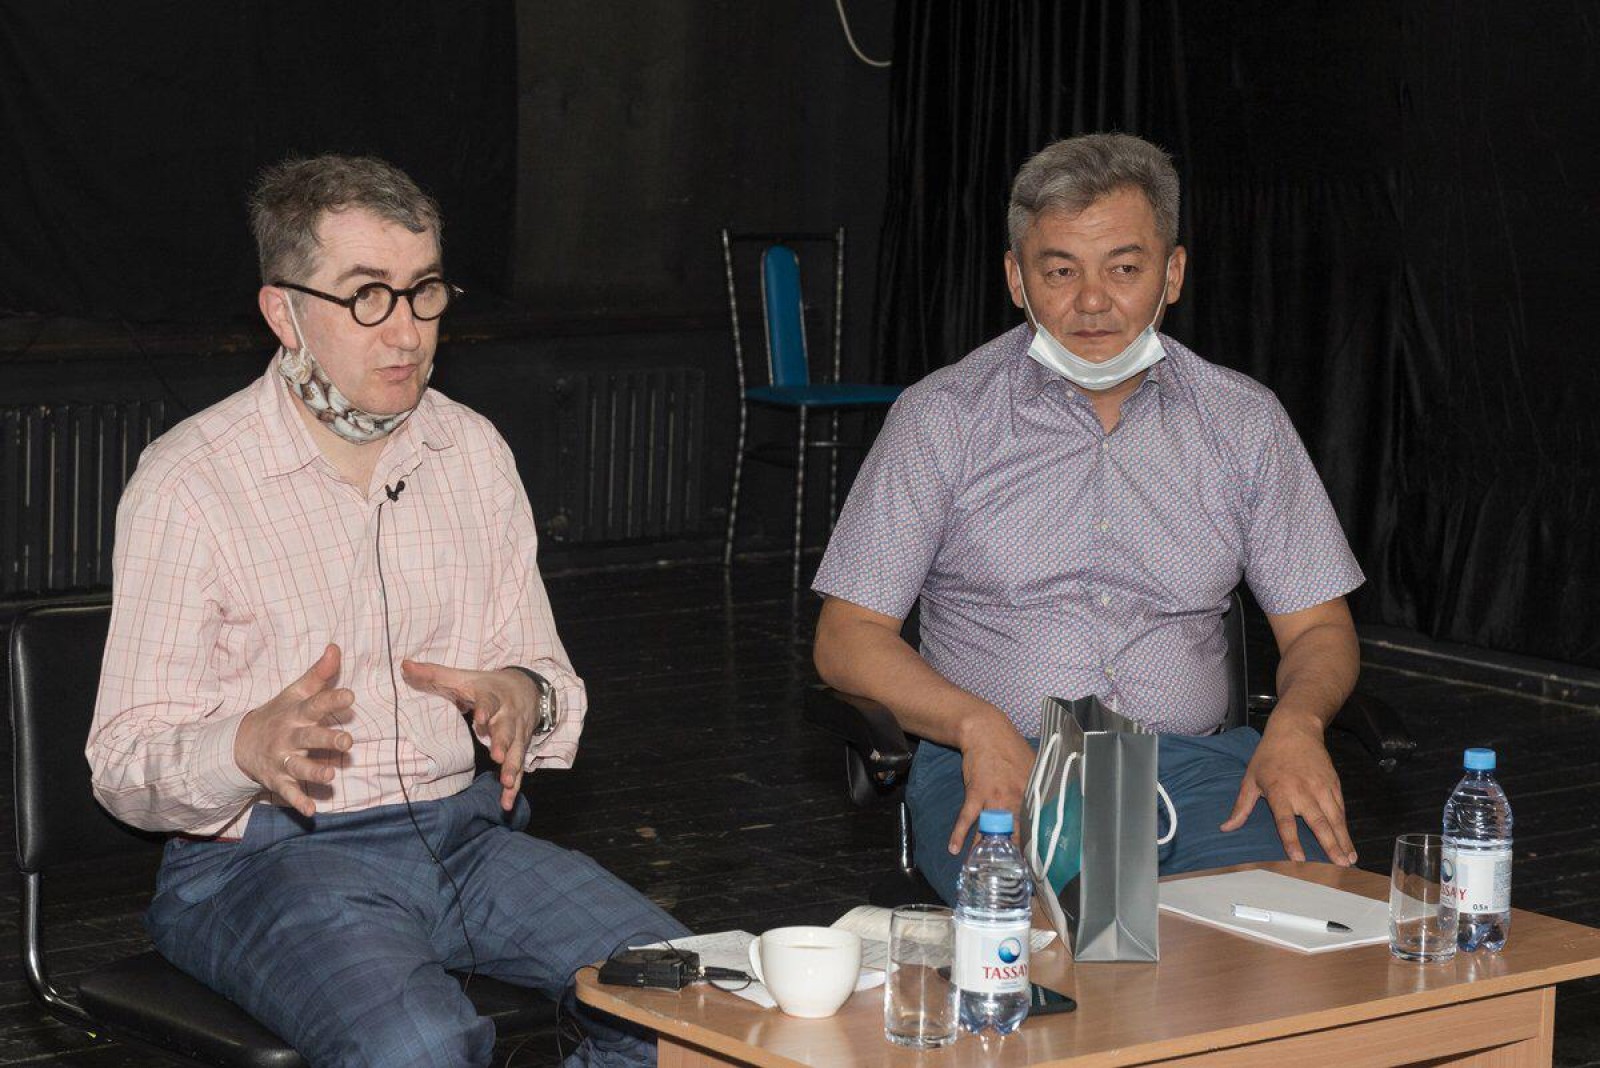 Постановки ГИТИСа в Нур-Султане и Таразе открыли новые пути развития театра в Казахстане